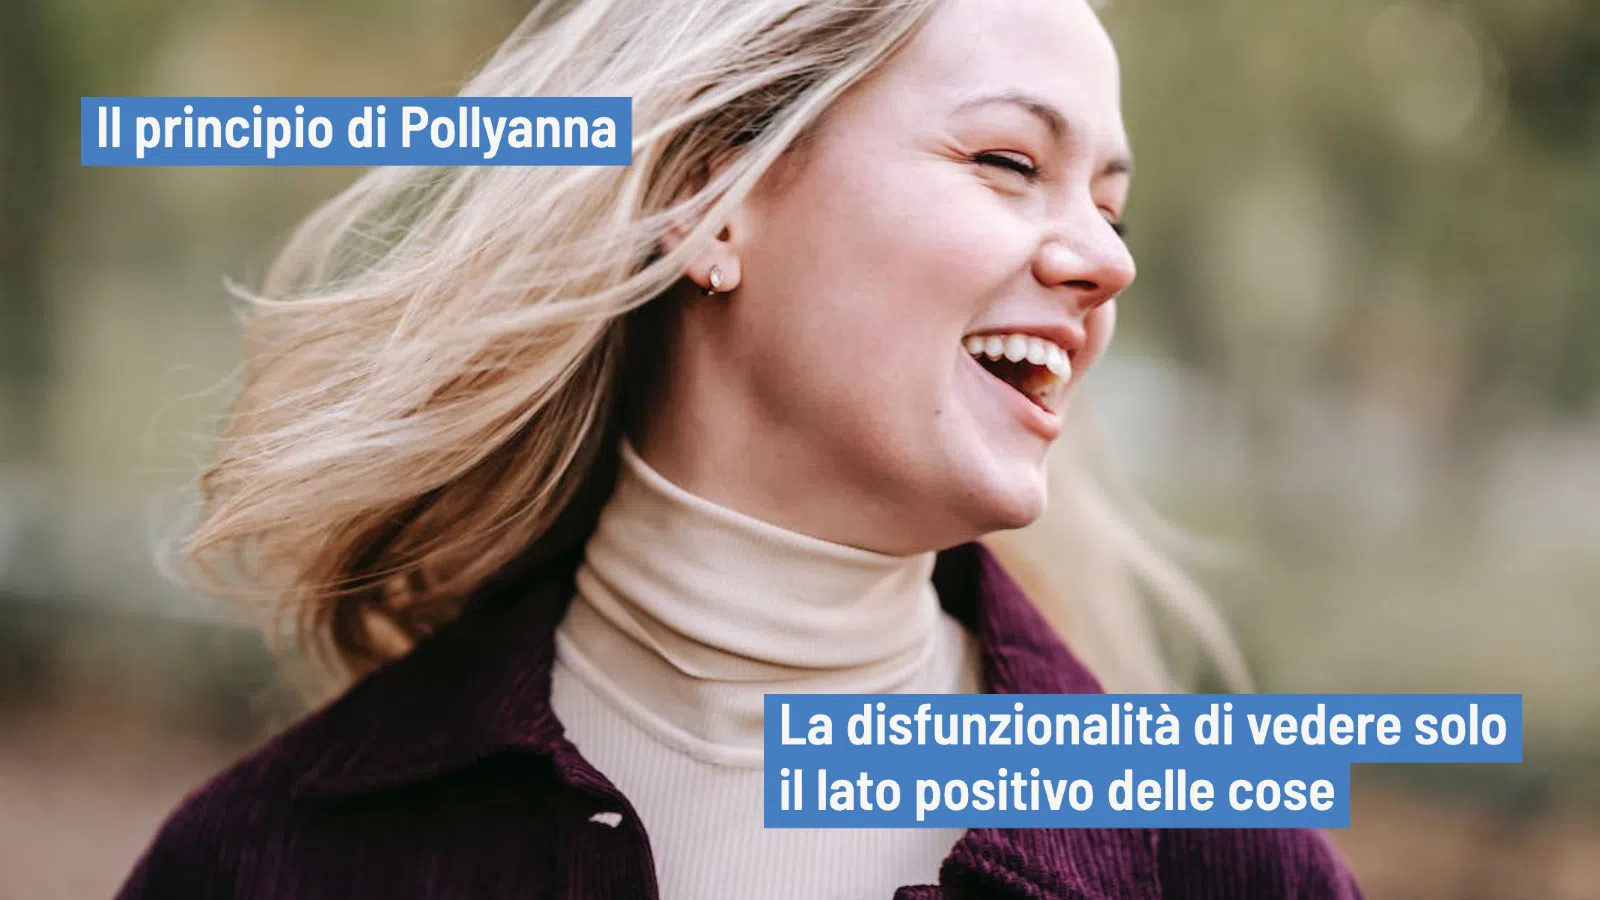 Principio di Pollyanna: un'eccessiva visione positiva